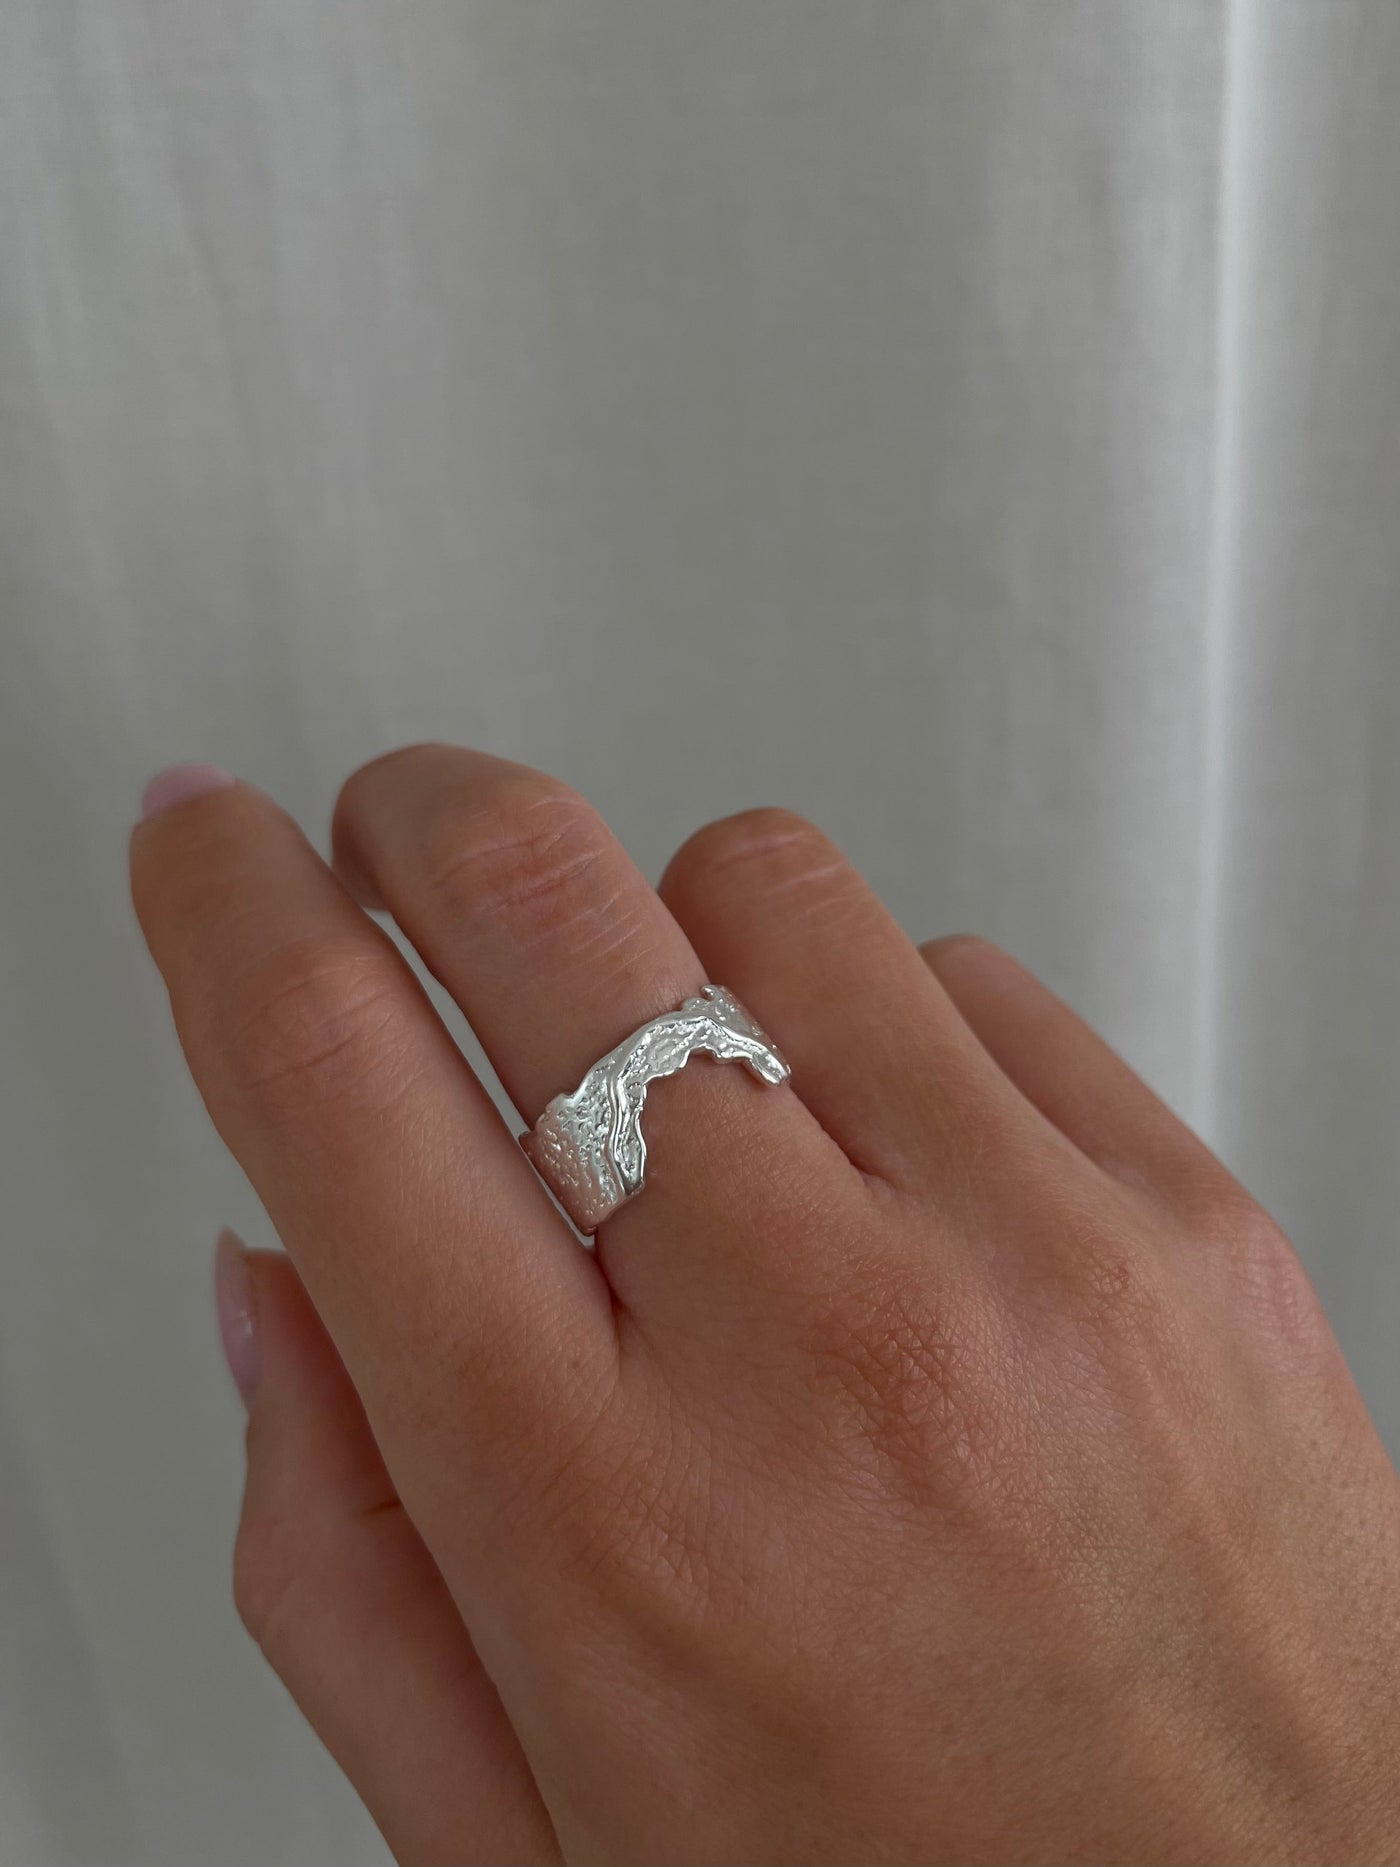 Aarya ring i sølv på finger